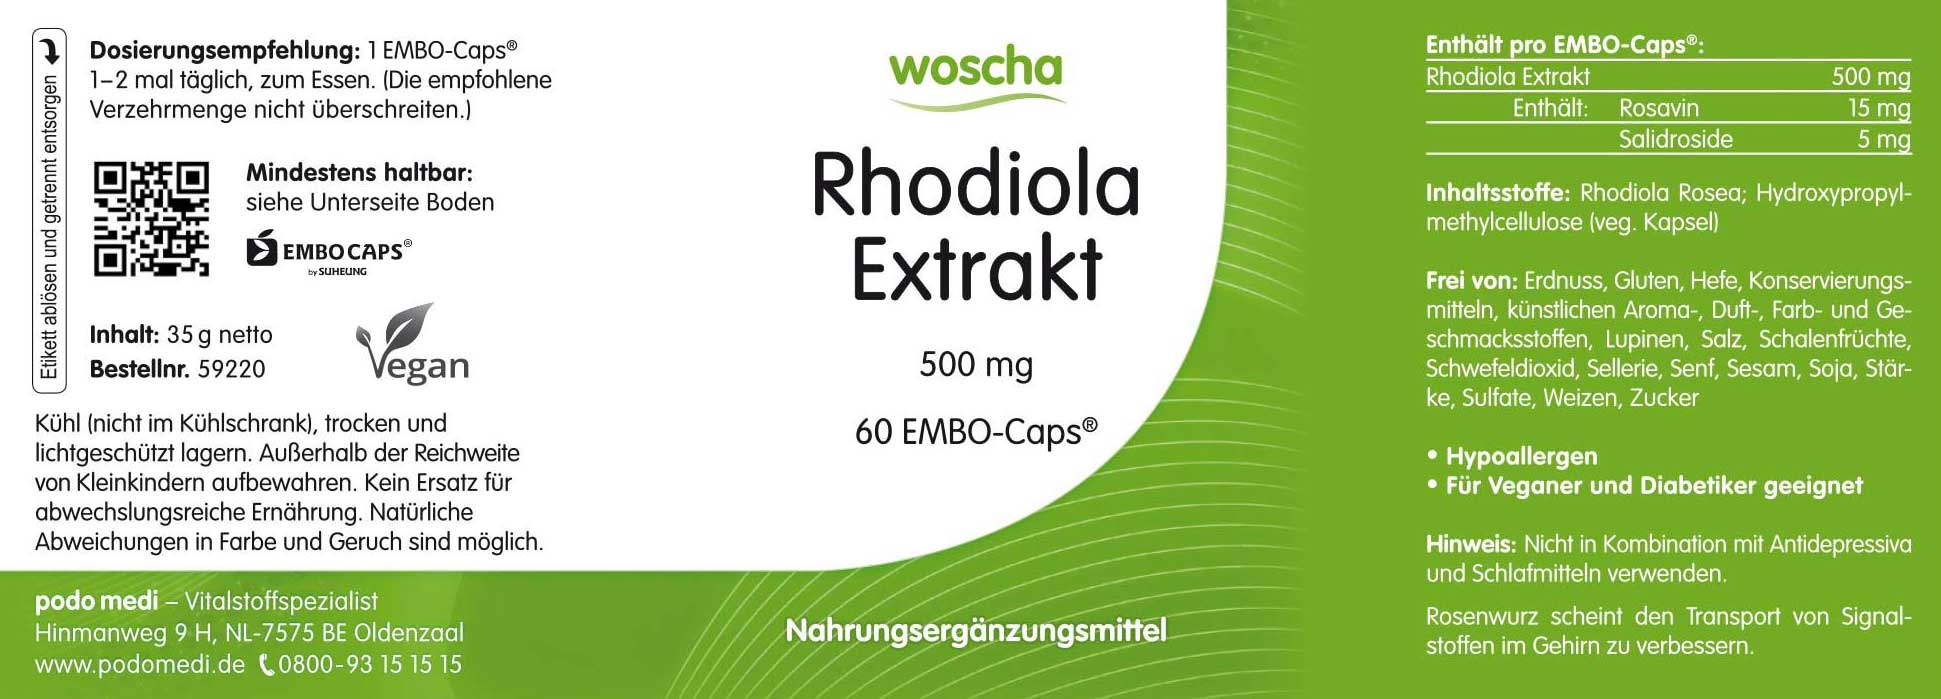 Woscha Rhodiola Extrakt von podo medi beinhaltet 60 Kapseln Etikett